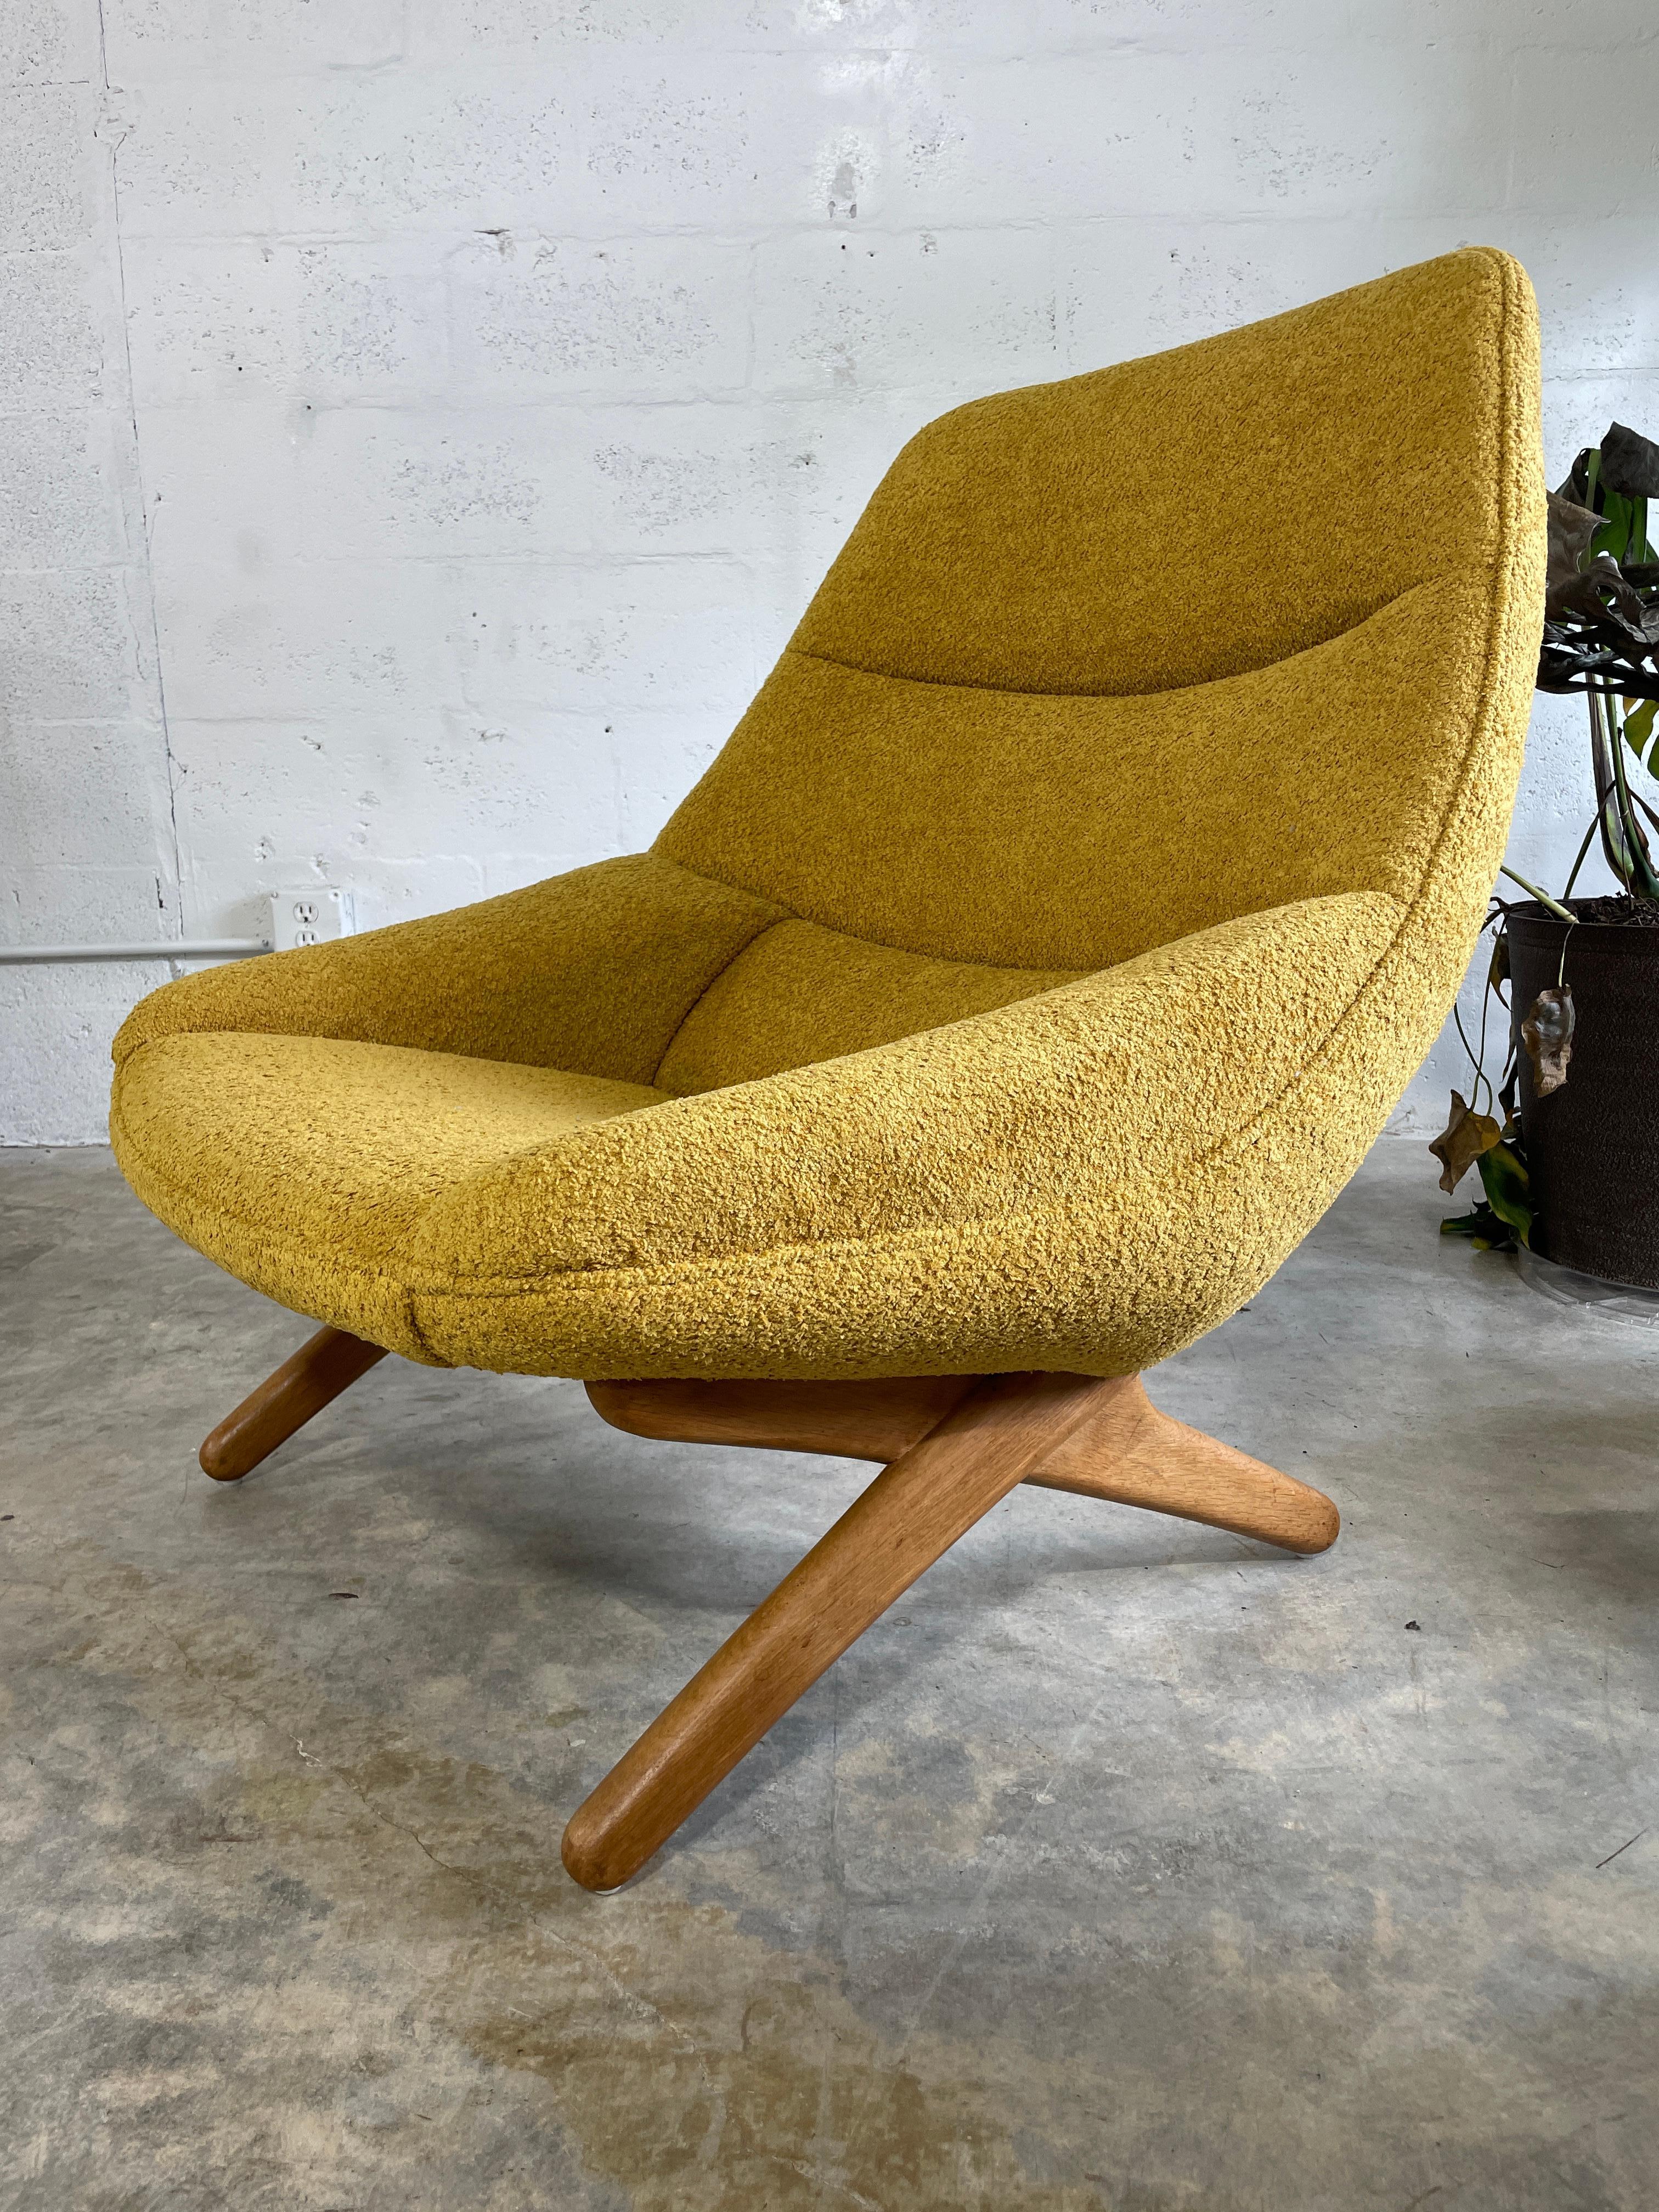 Illum Wikkelso Model Ml91 Danish Modern Lounge Chair For Sale 1